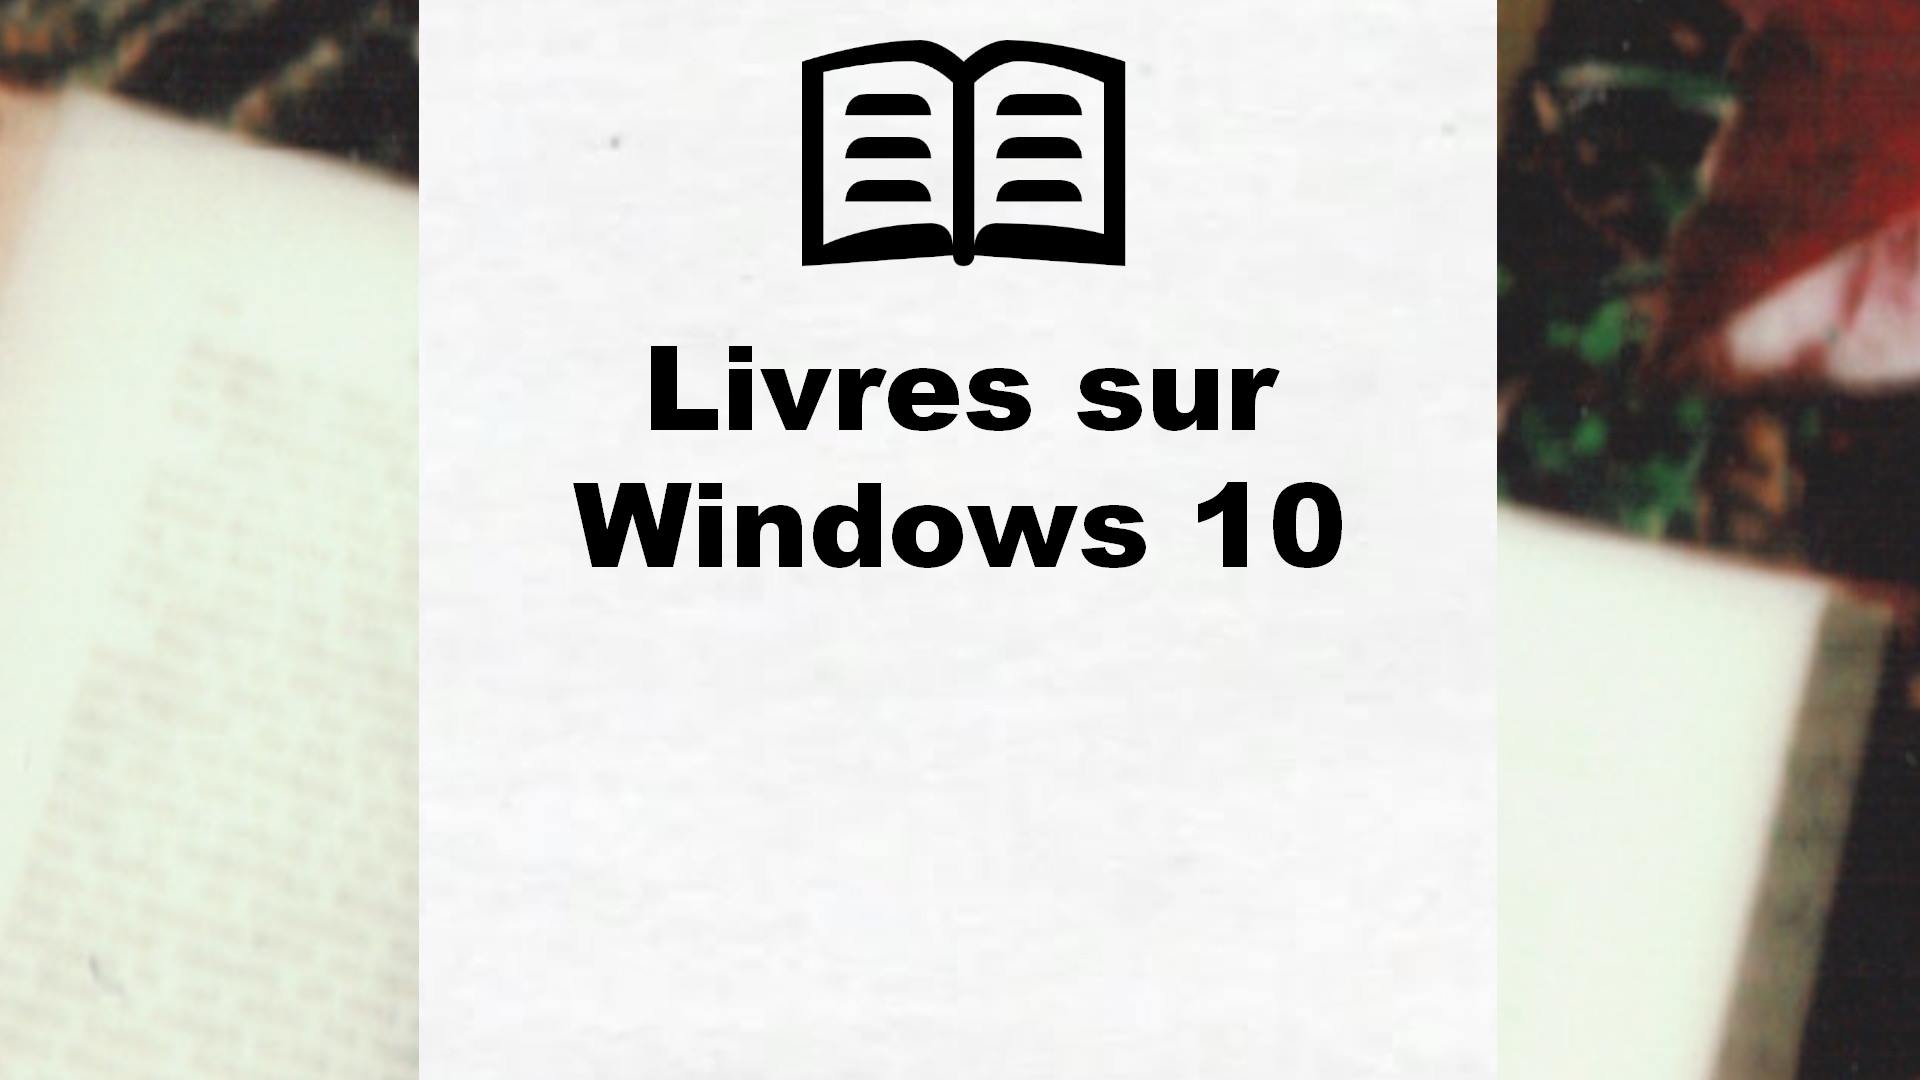 Livres sur Windows 10